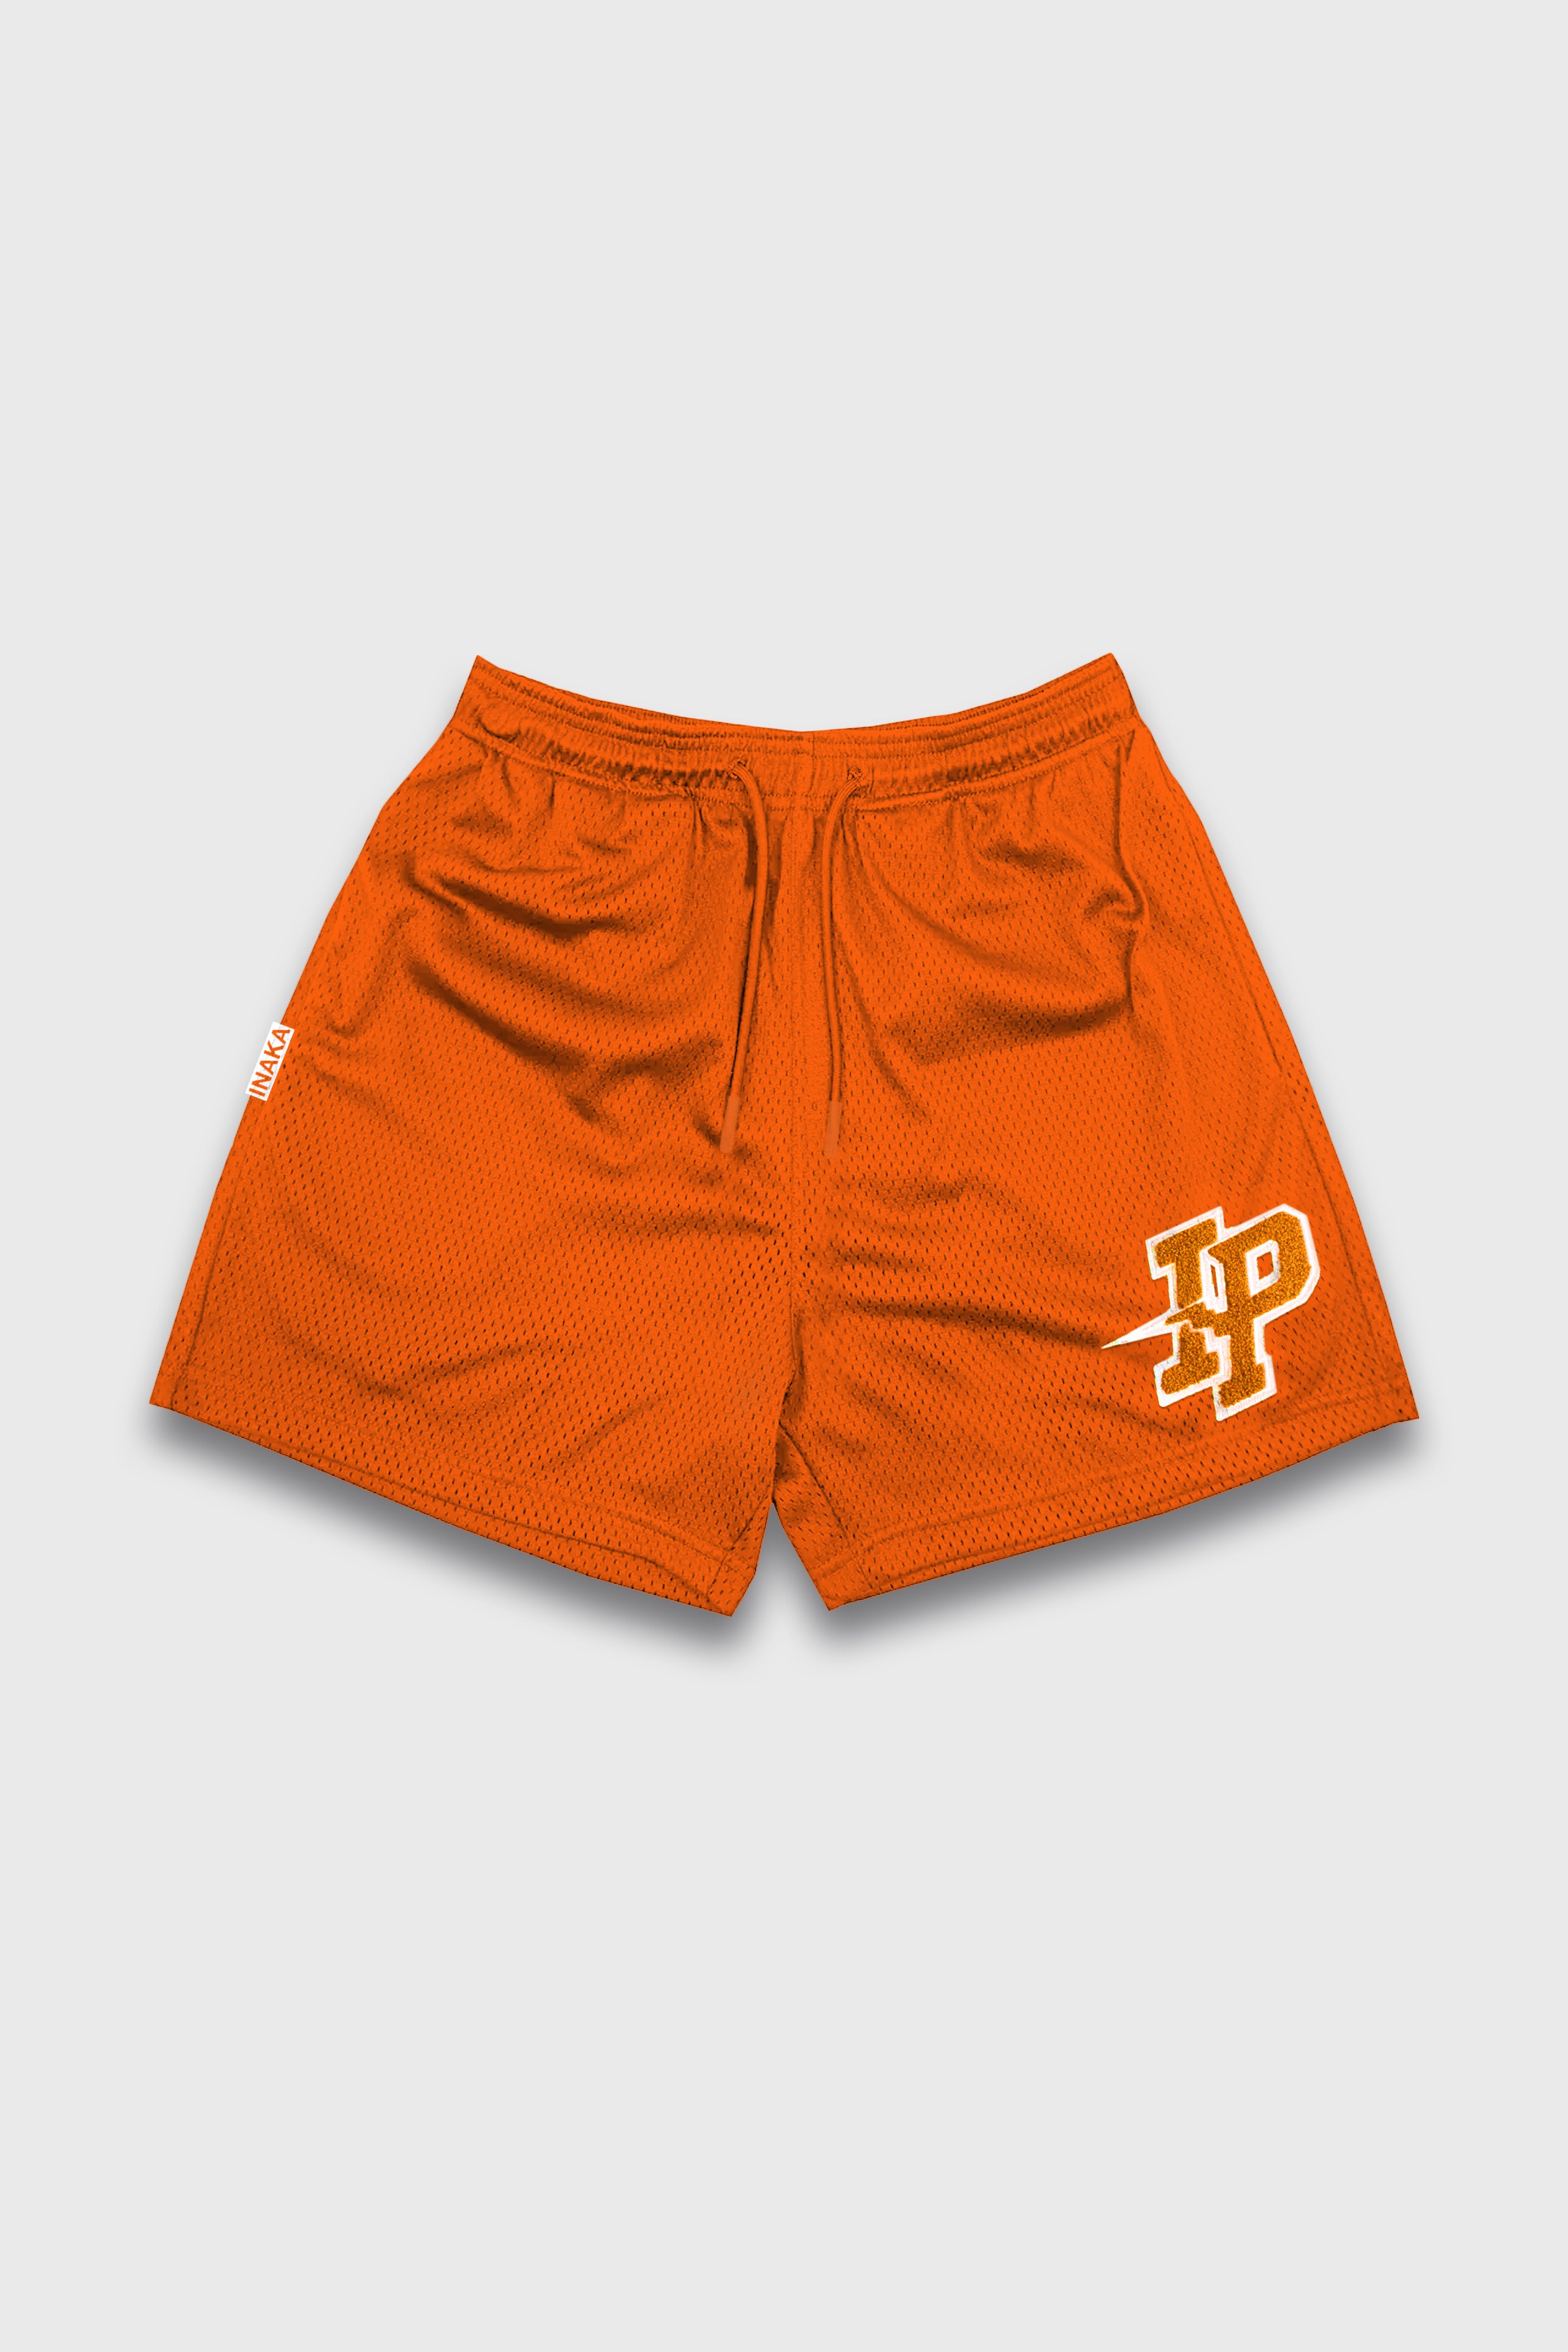 Patch Basic Shorts - Orange